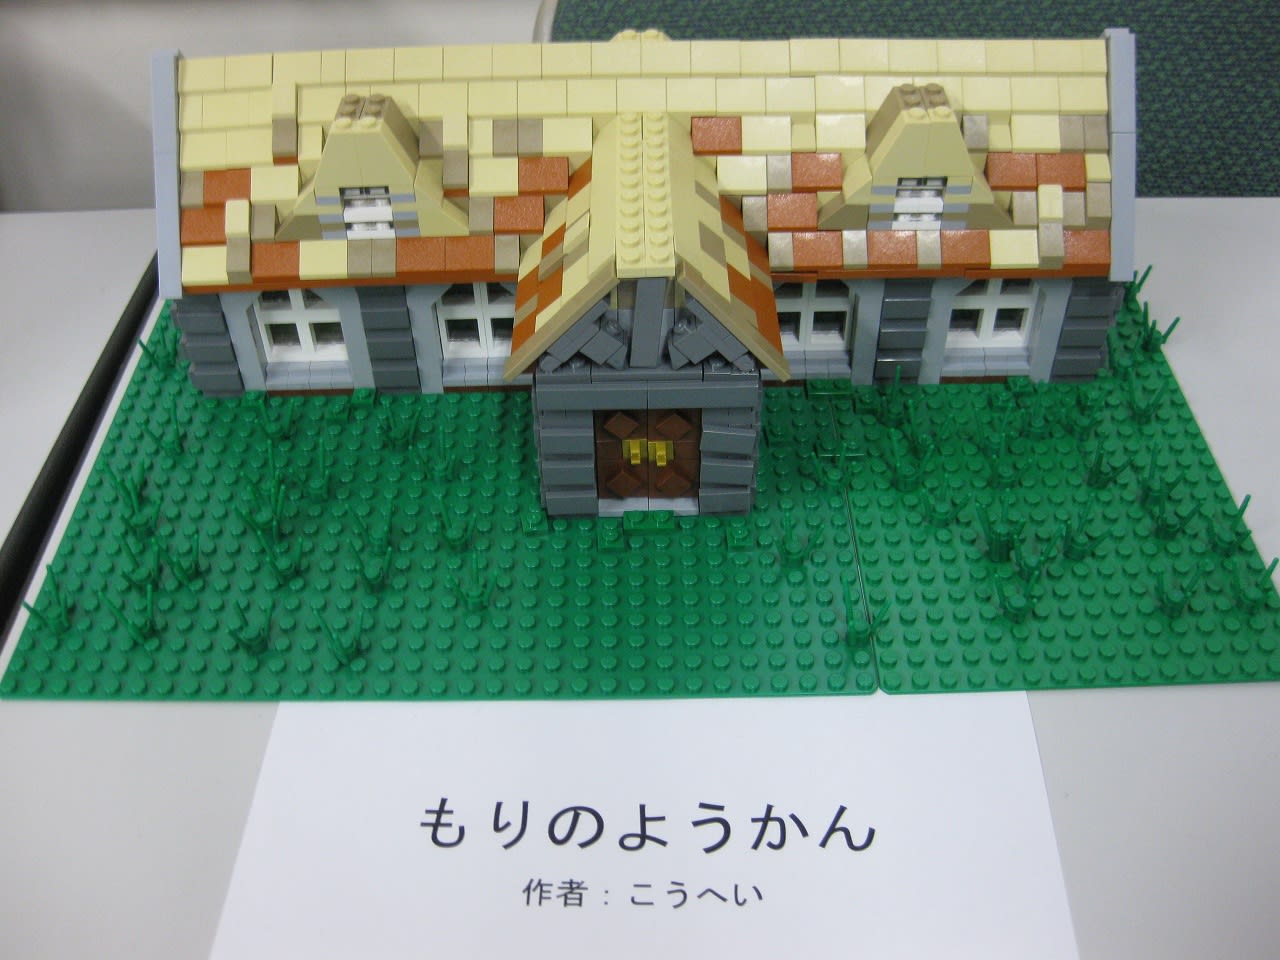 駒場祭まとめpart1 東大レゴ部 ブログ